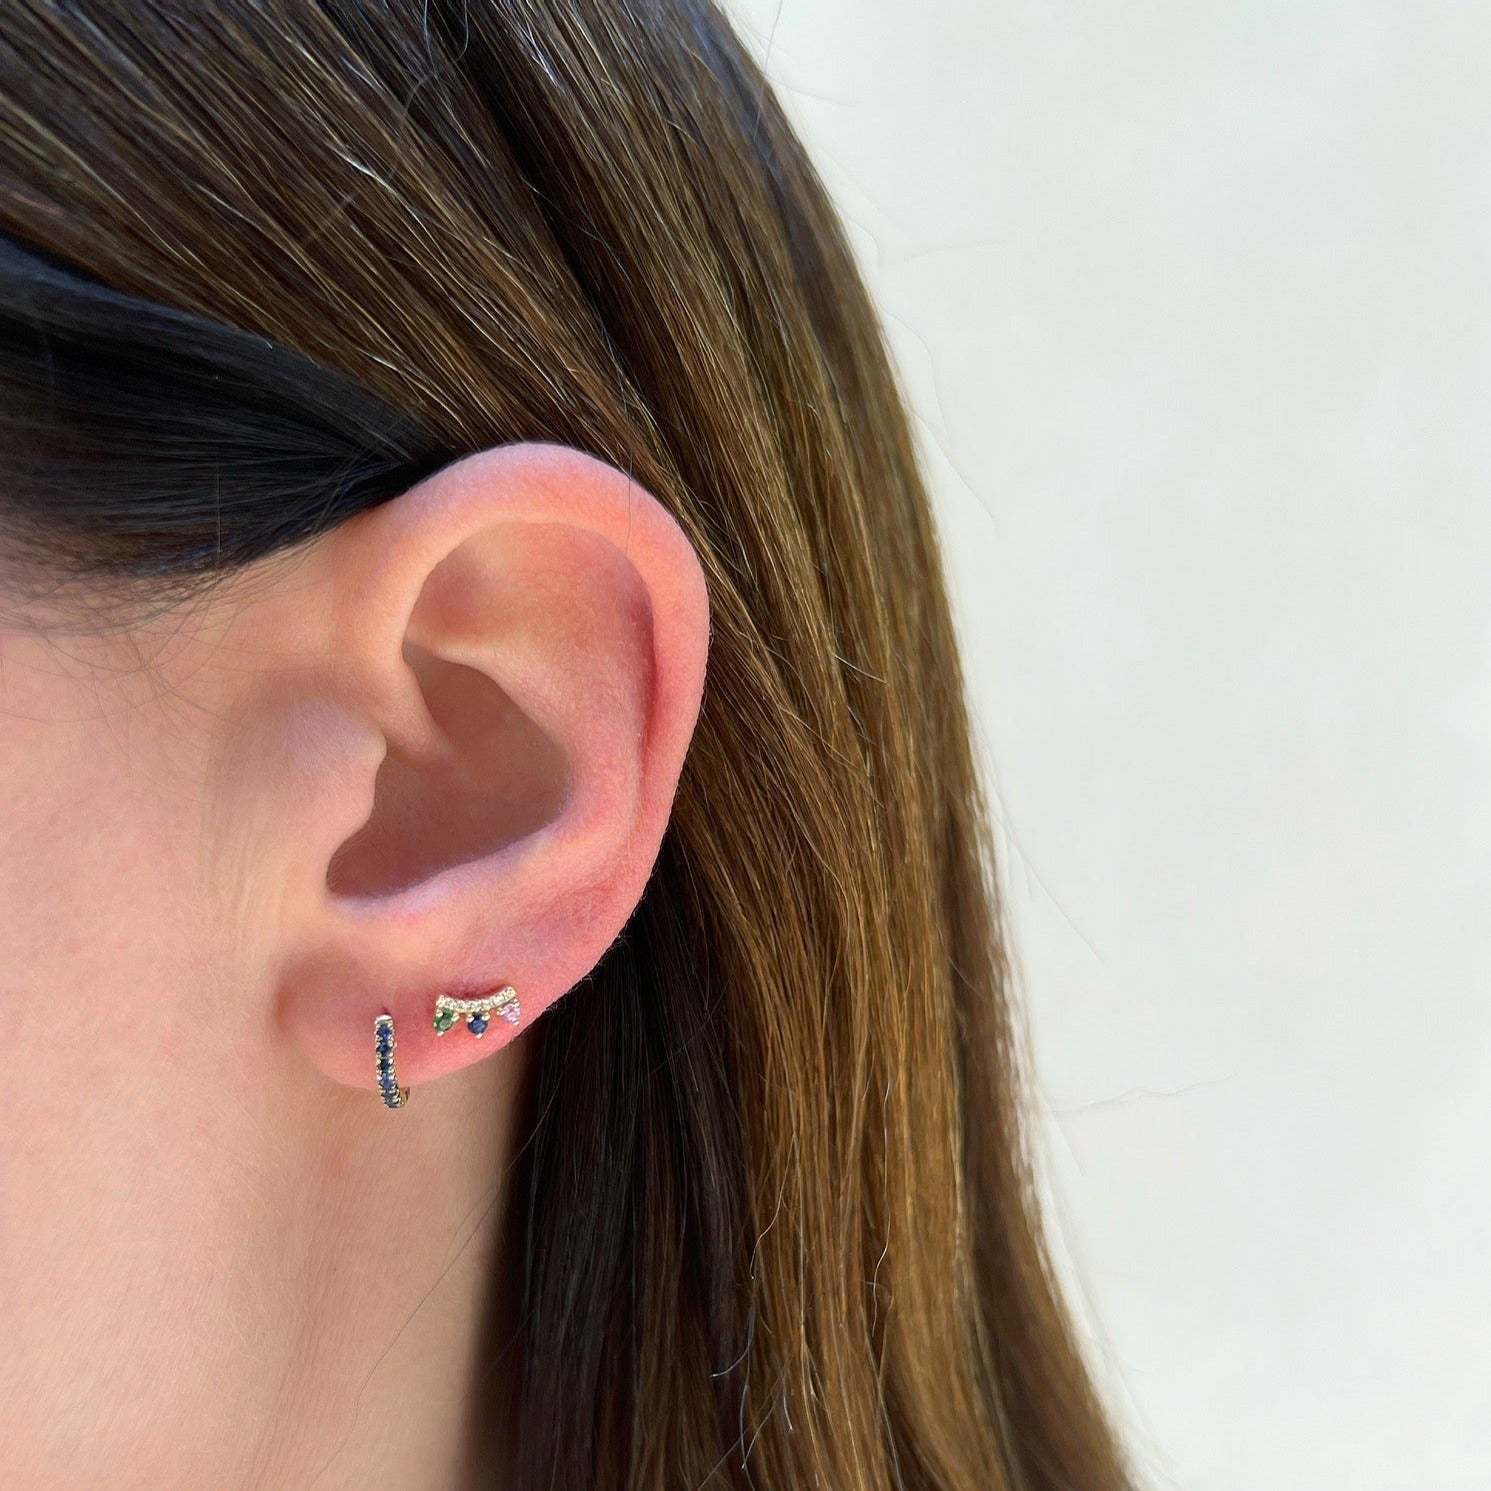 Blue Sapphire Mini Huggie Earring in 14k yellow gold on first earring hole on earlobe of model